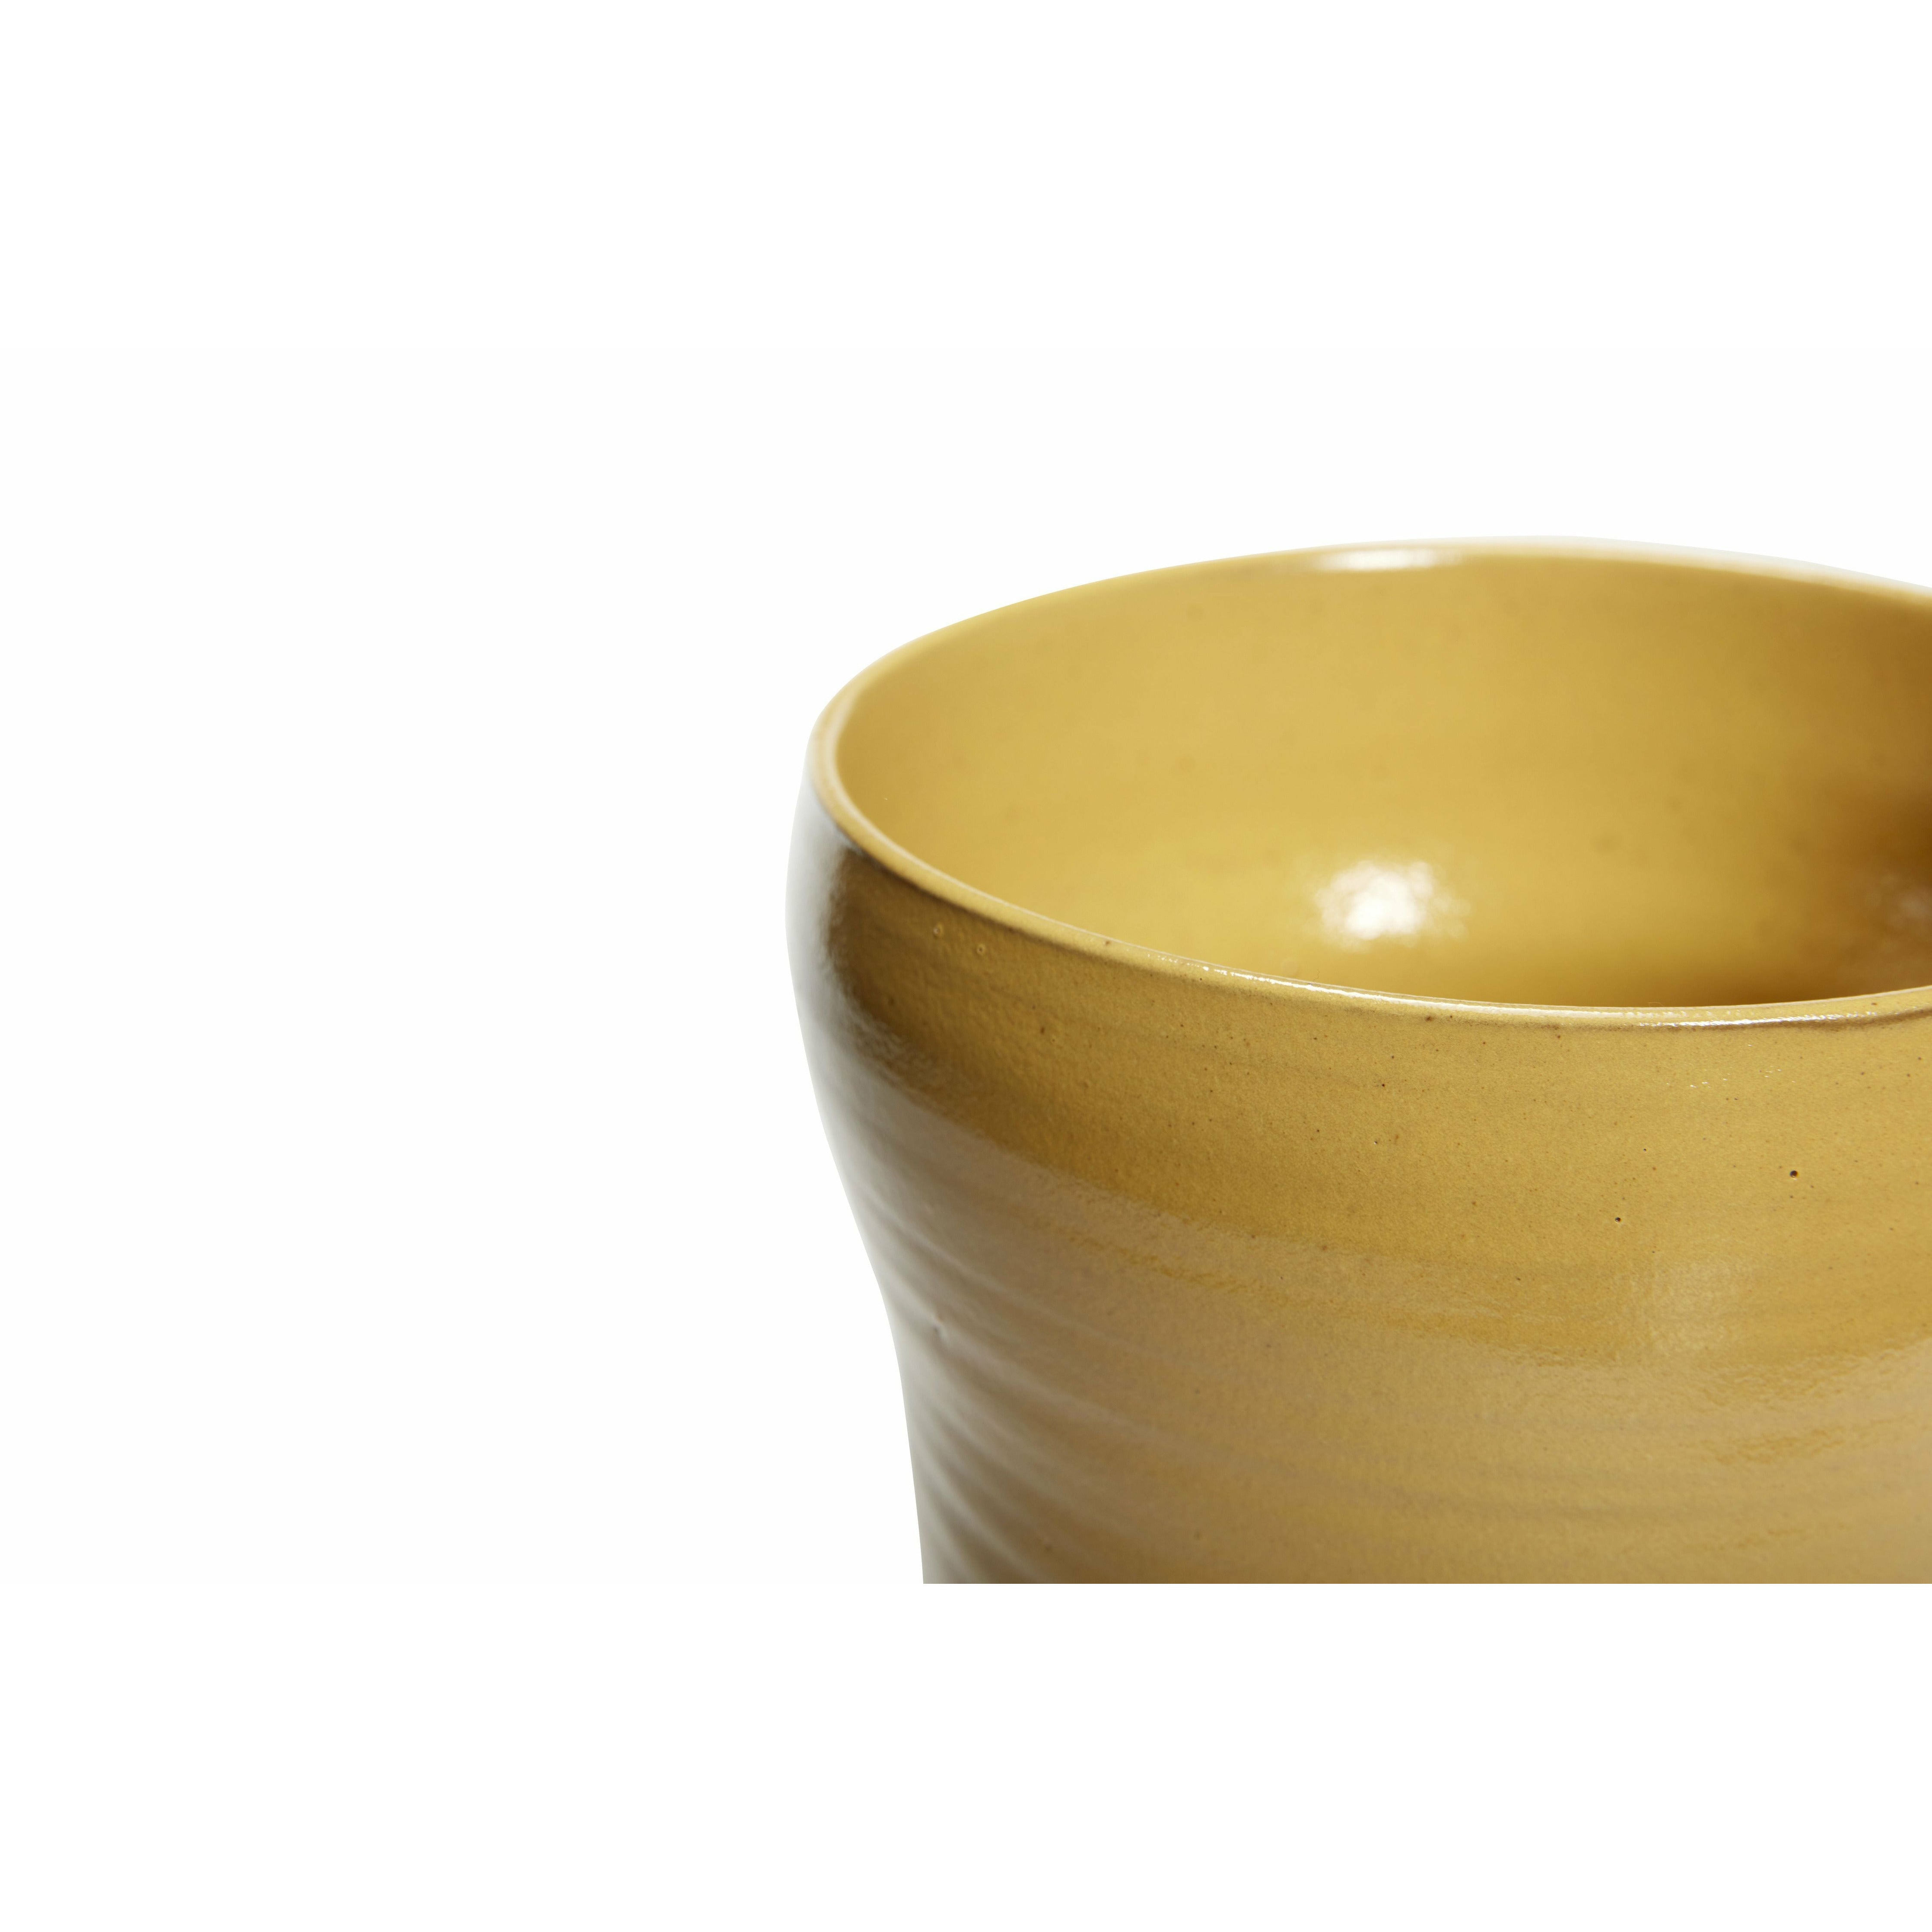 Hübsch Care Pot Ceramiczny żółty zestaw 2